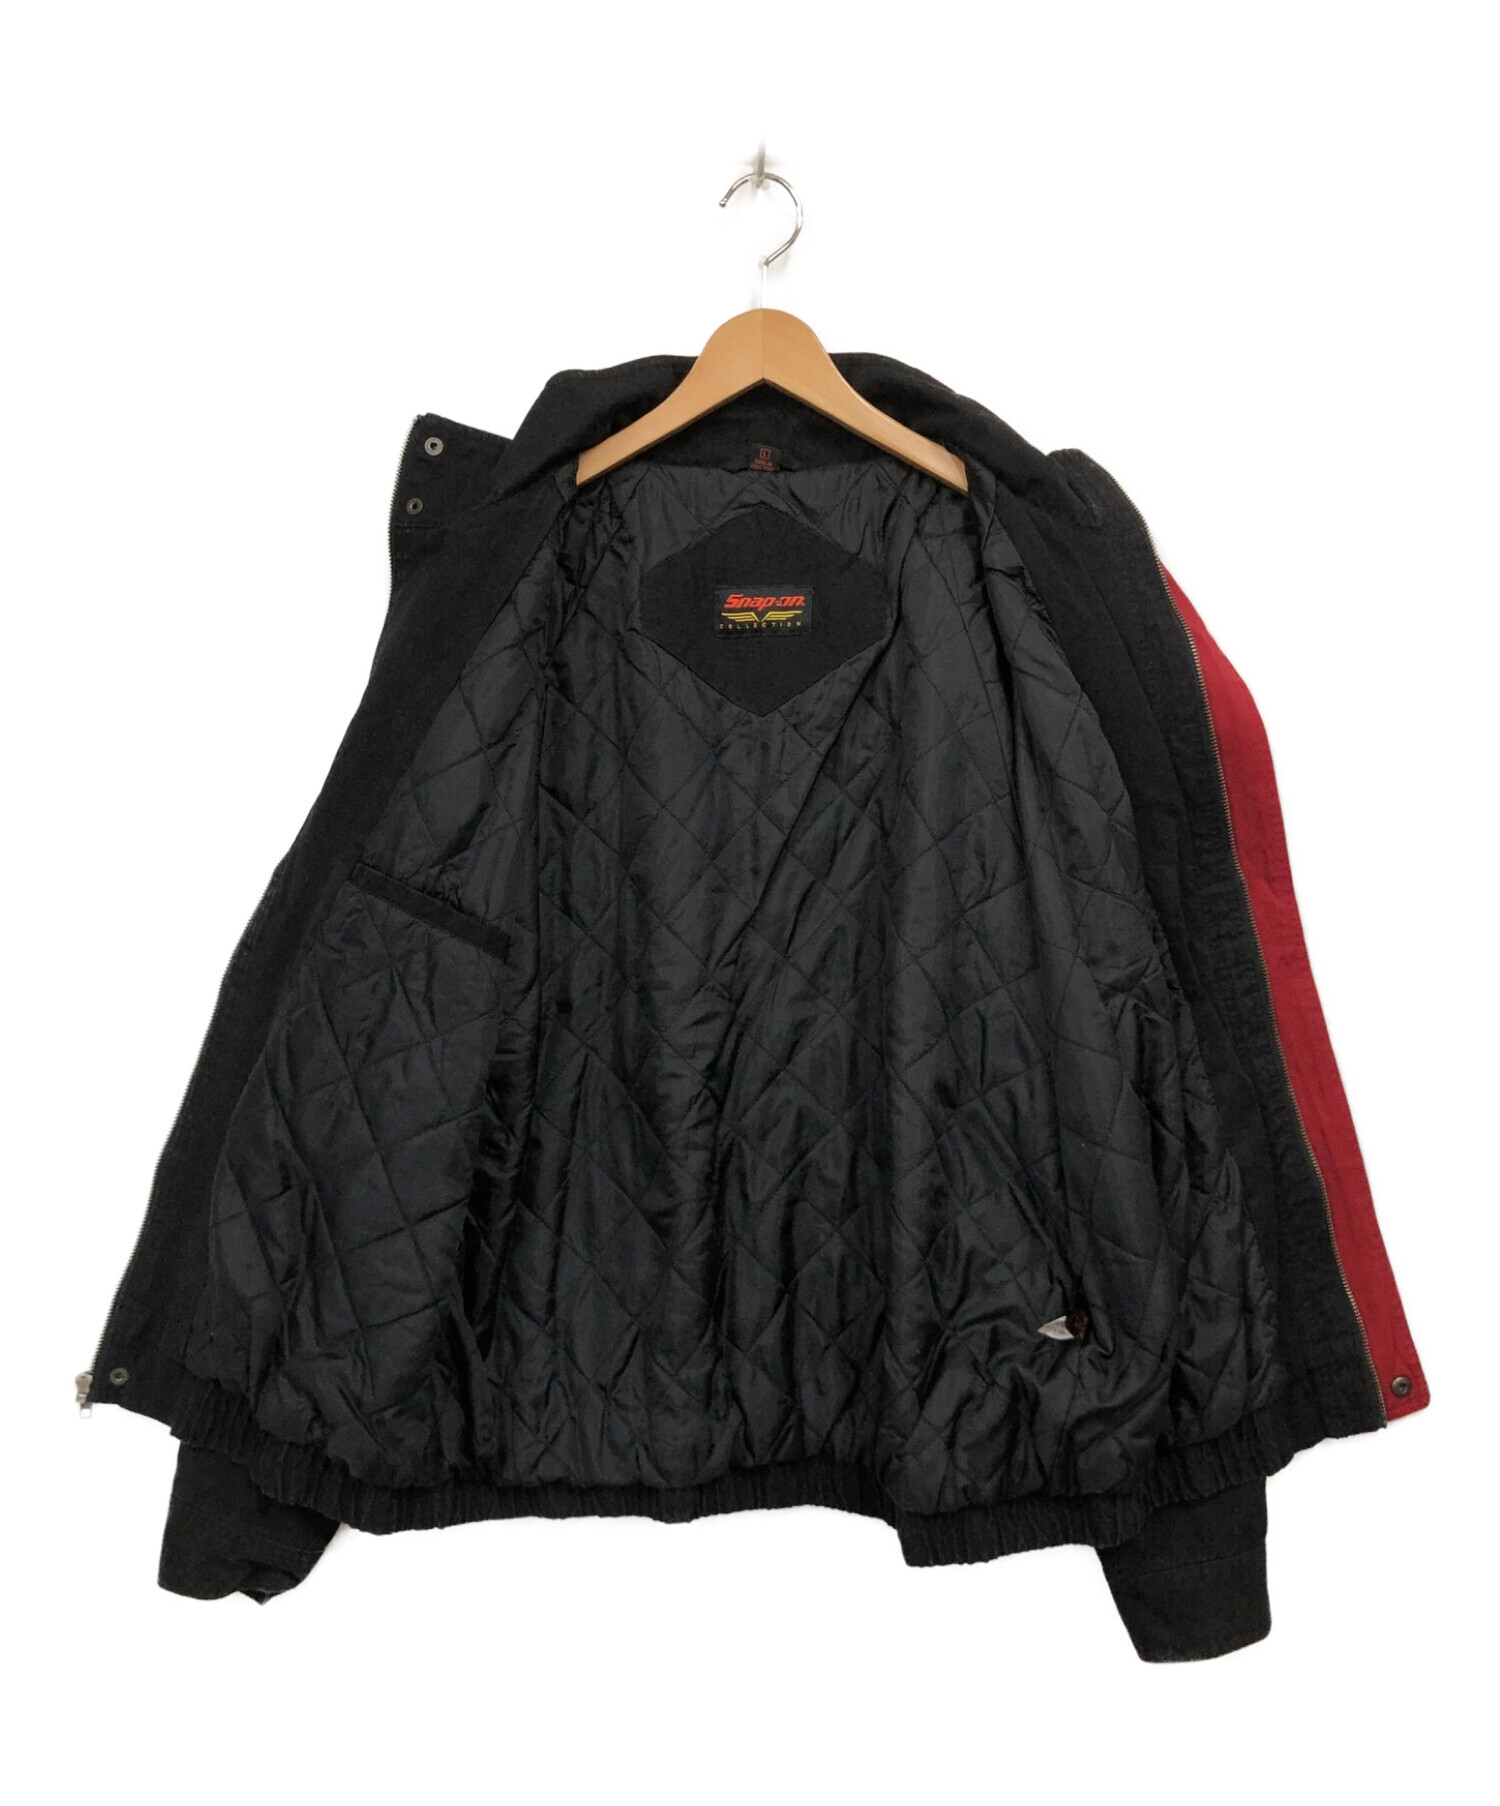 SNAP-ON (スナップオン) ワークジャケット ブラック サイズ:L